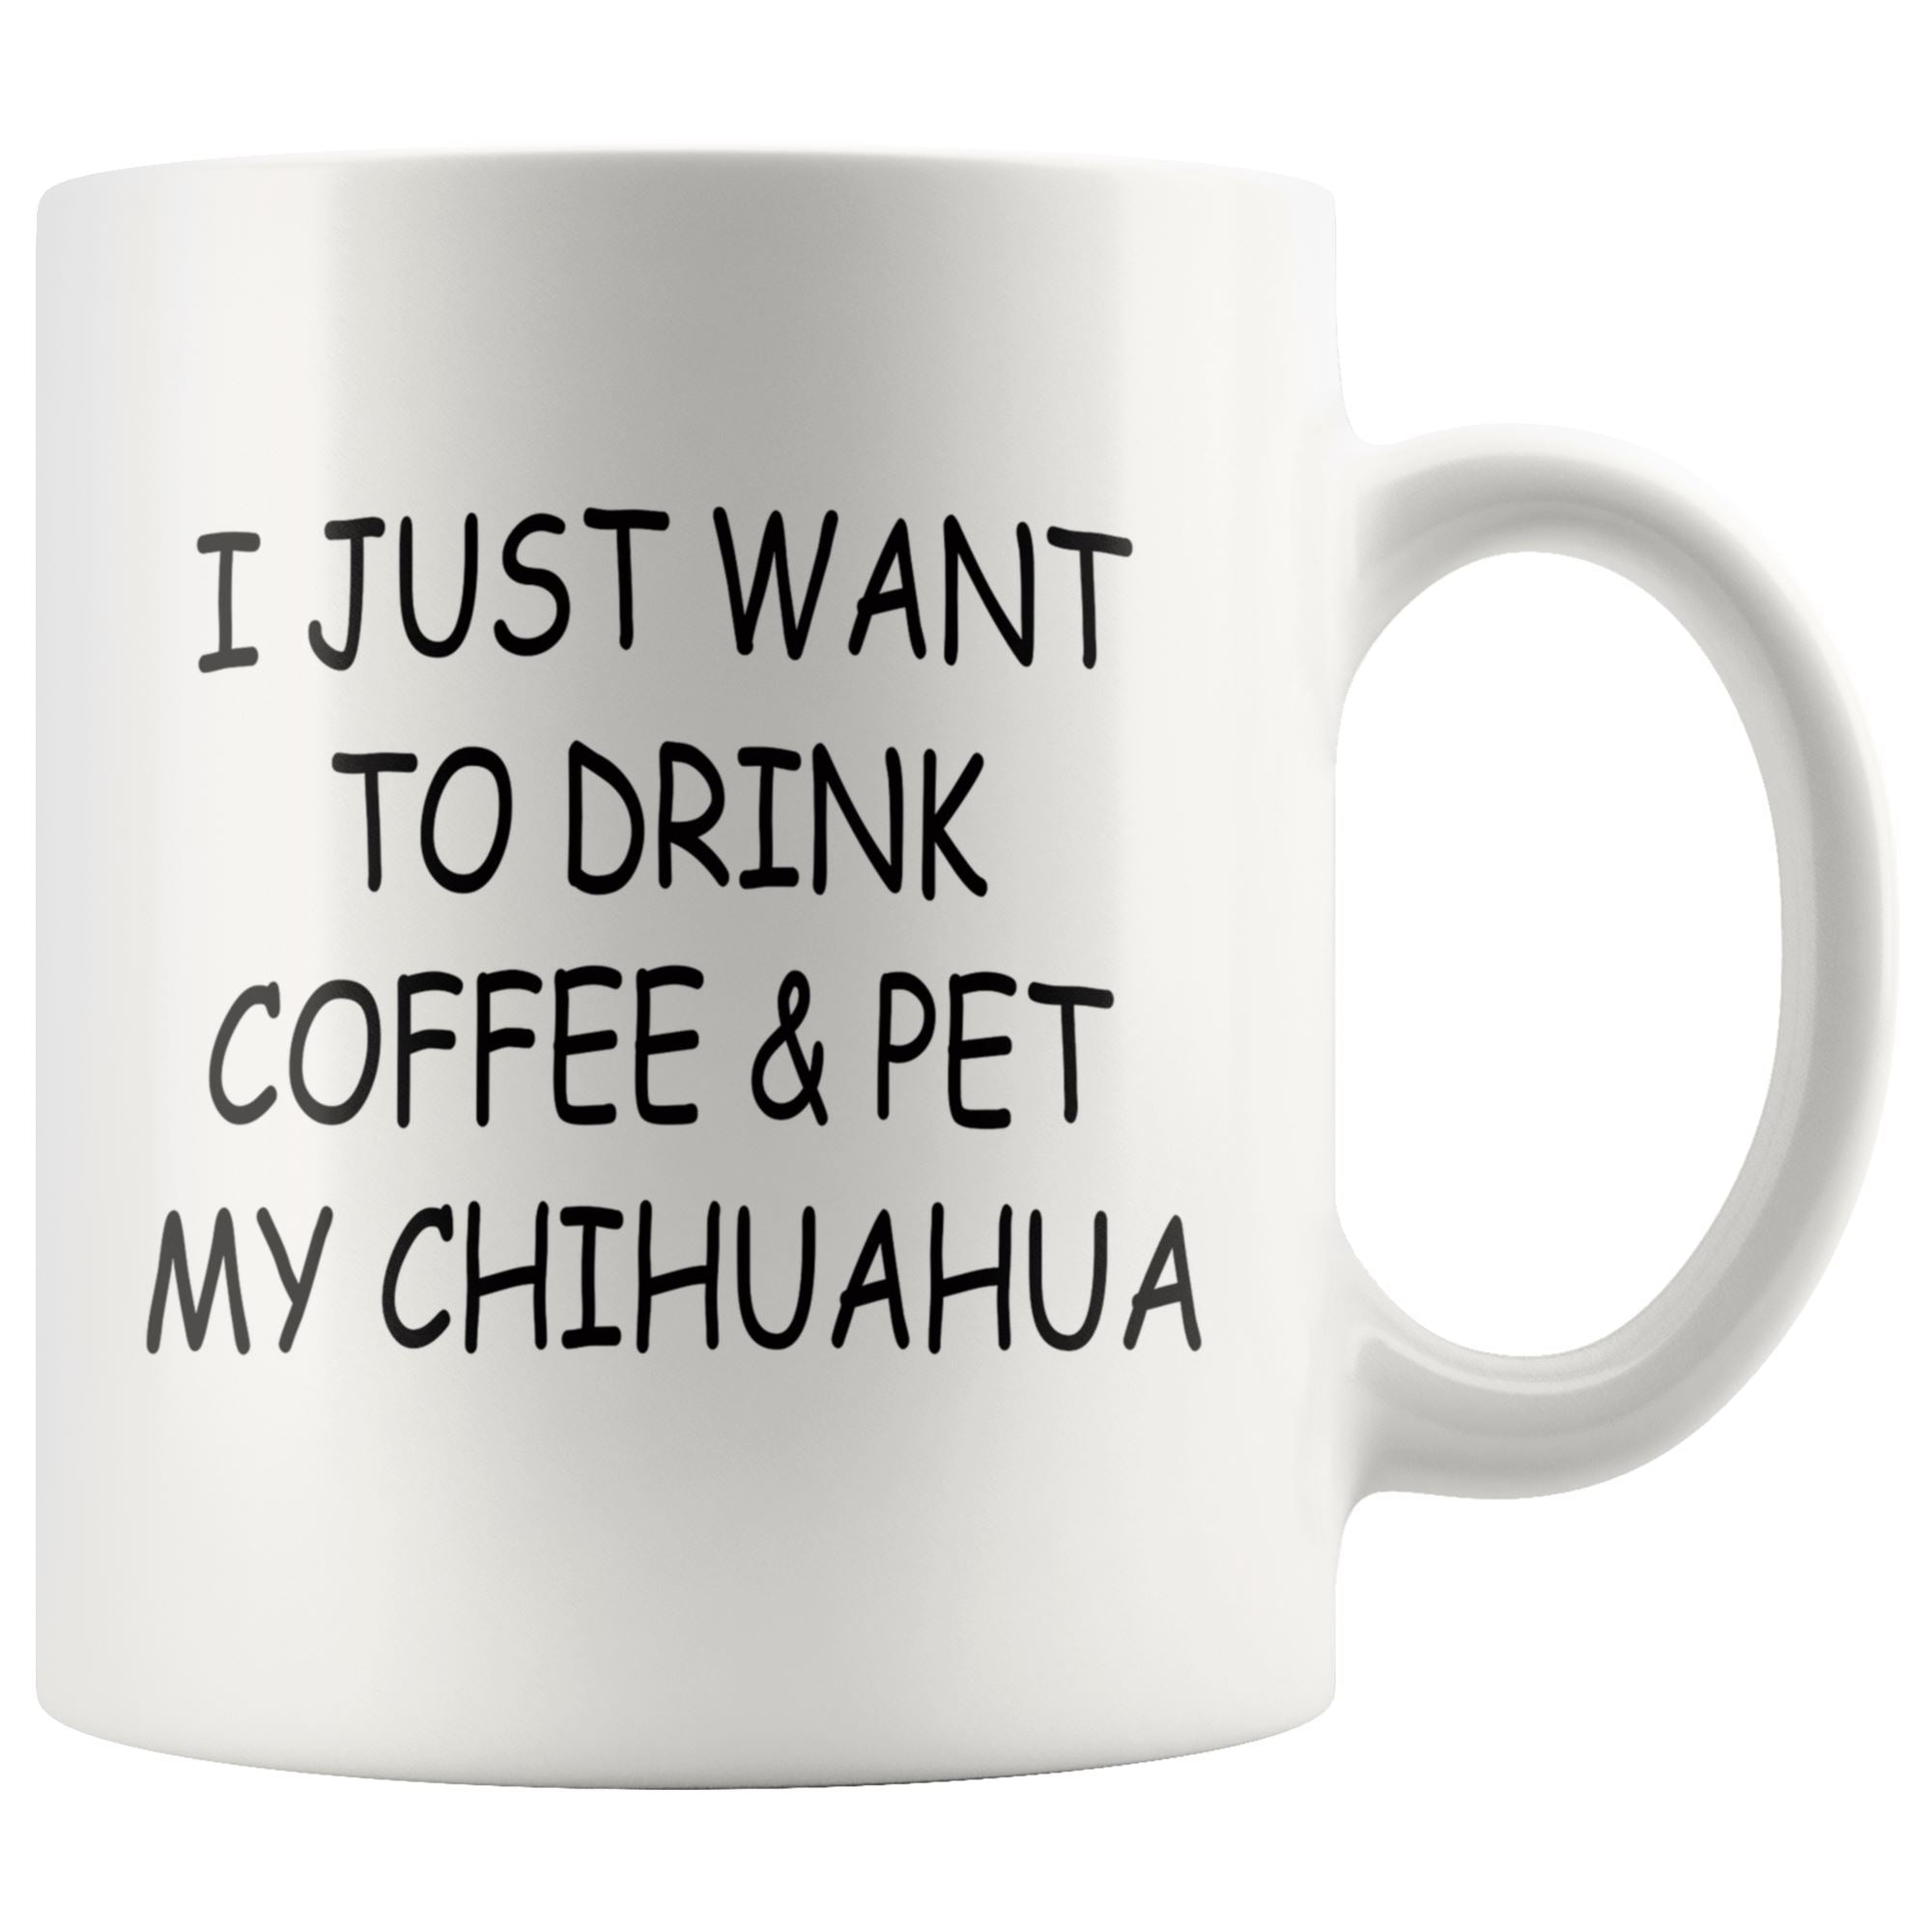 Chihuahua Mug Drinkware teelaunch 11oz Mug 